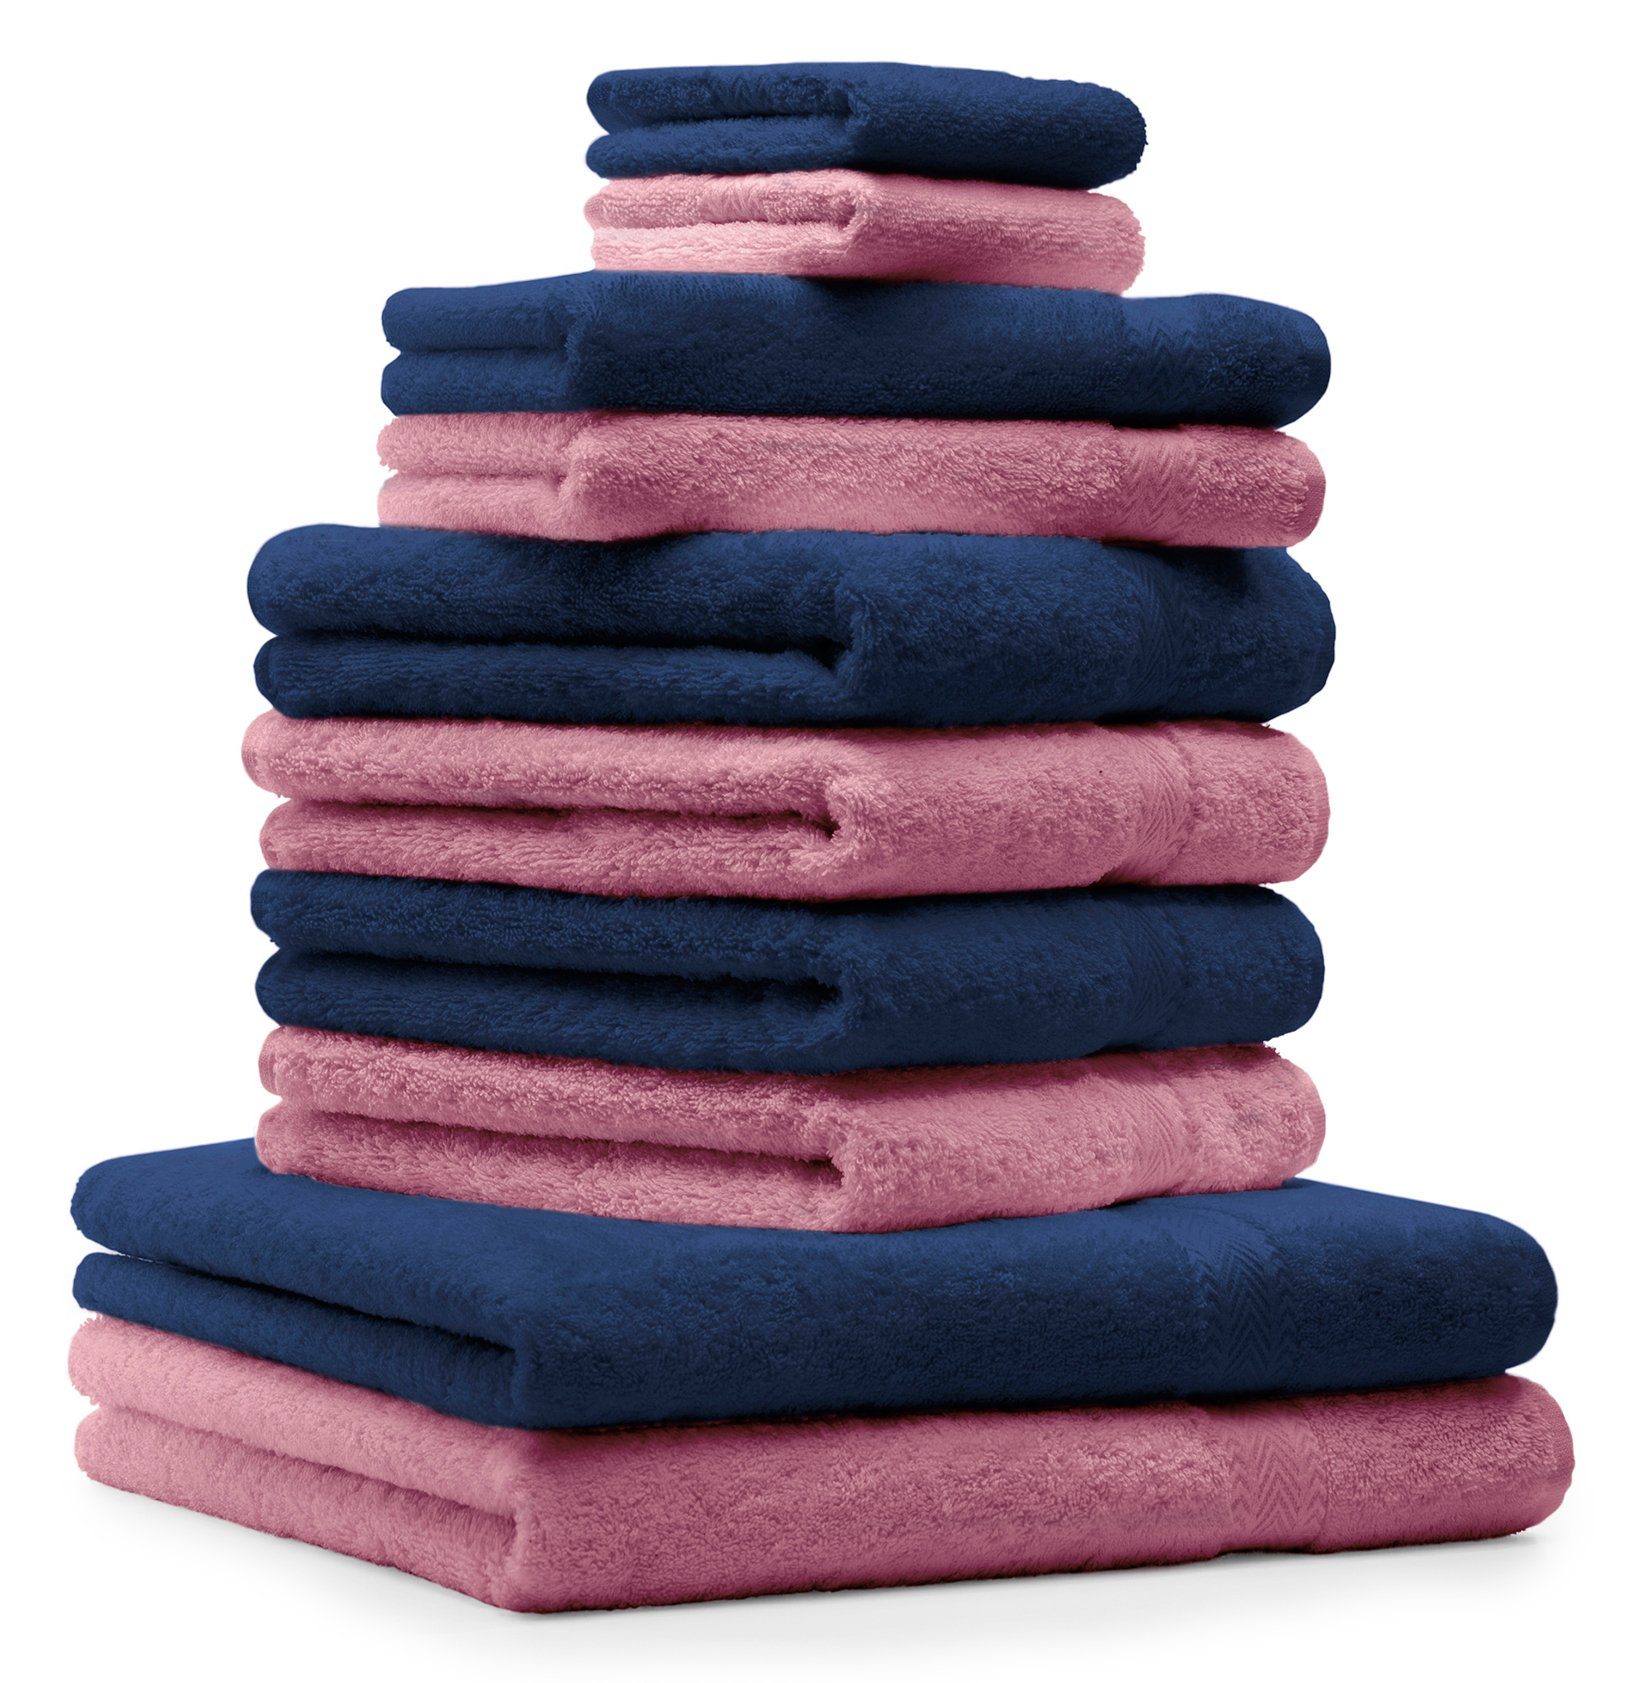 Betz Handtuch Set 10-TLG. Handtuch-Set Premium Farbe Dunkelblau & Altrosa, 100% Baumwolle, (Set, 10-tlg), saugstark und strapazierfähig